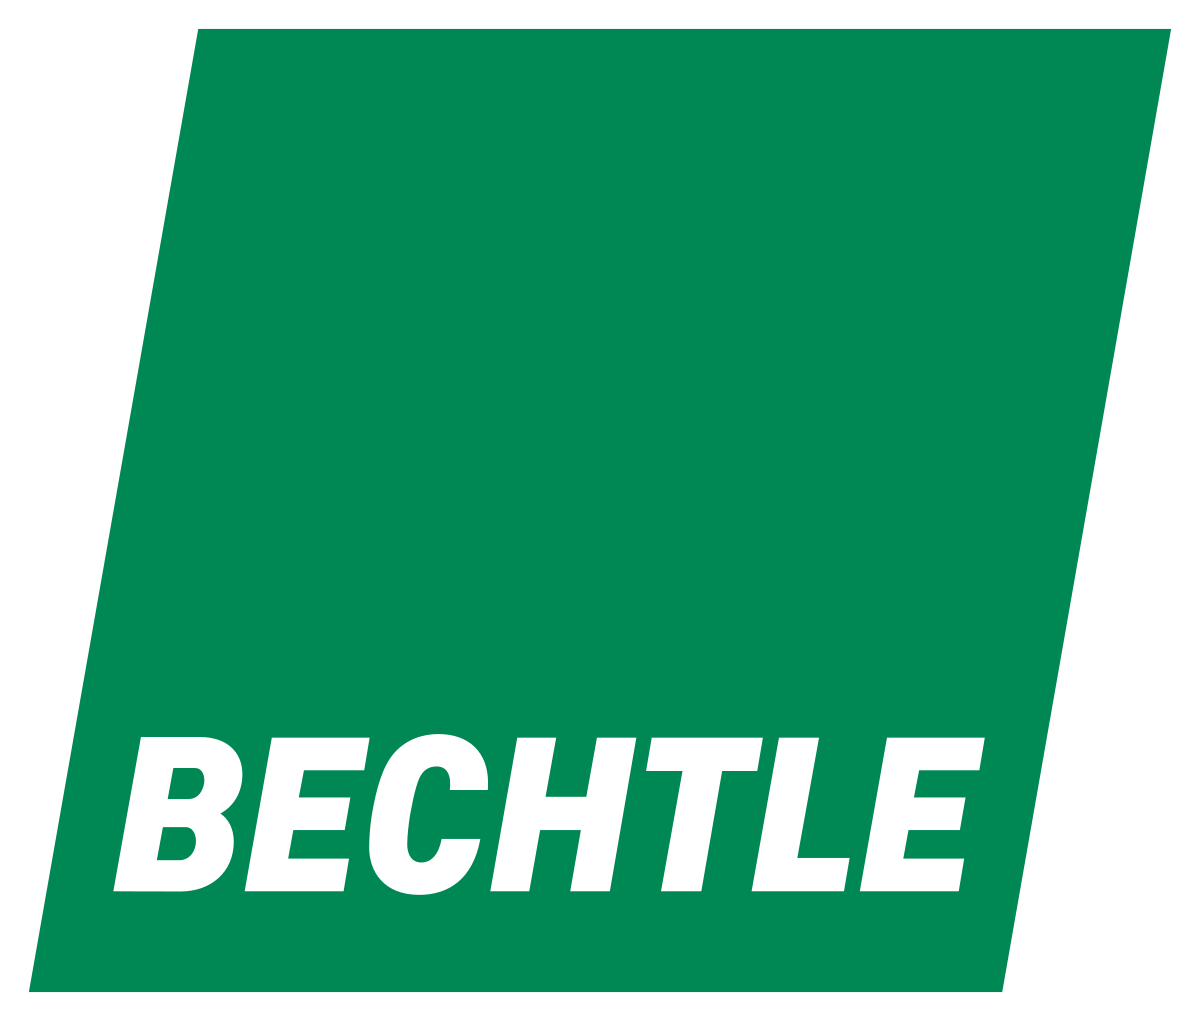 Bechtle (IT Services) Brand Logo